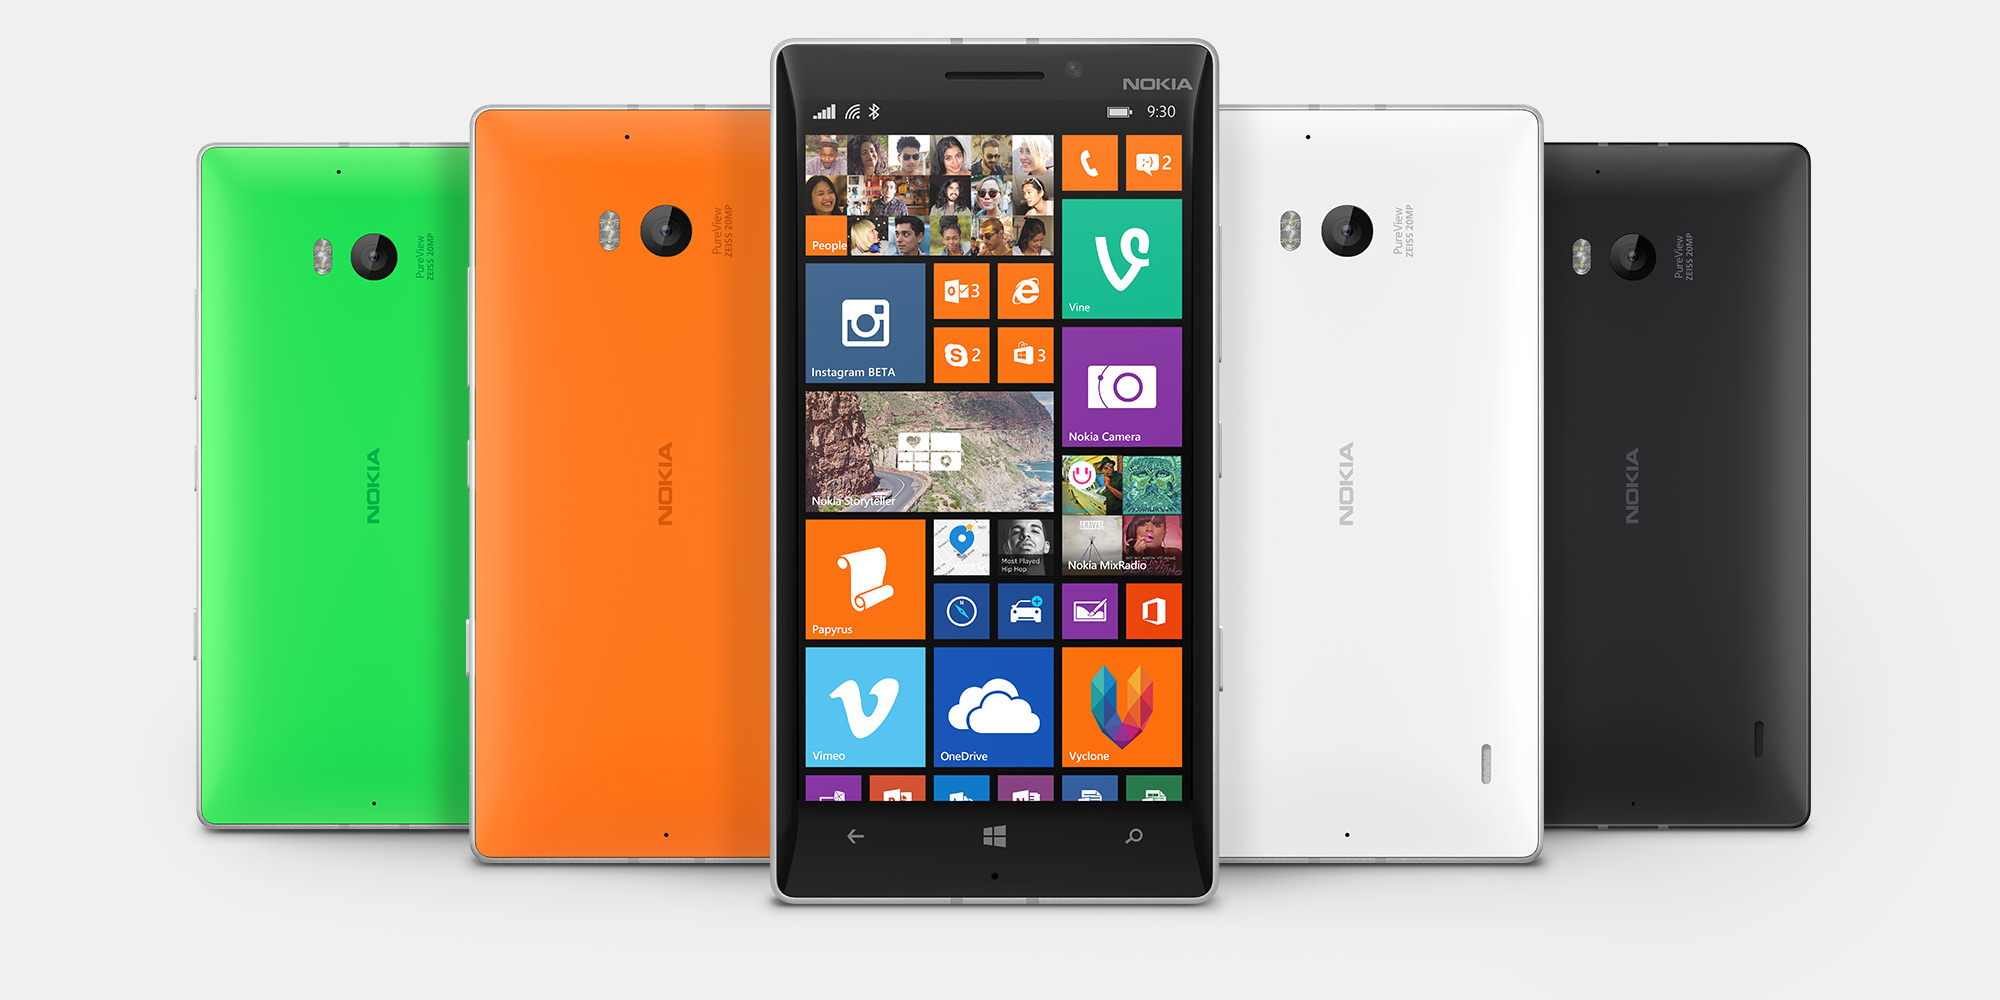 Microsoft met le holà sur la gamme Lumia